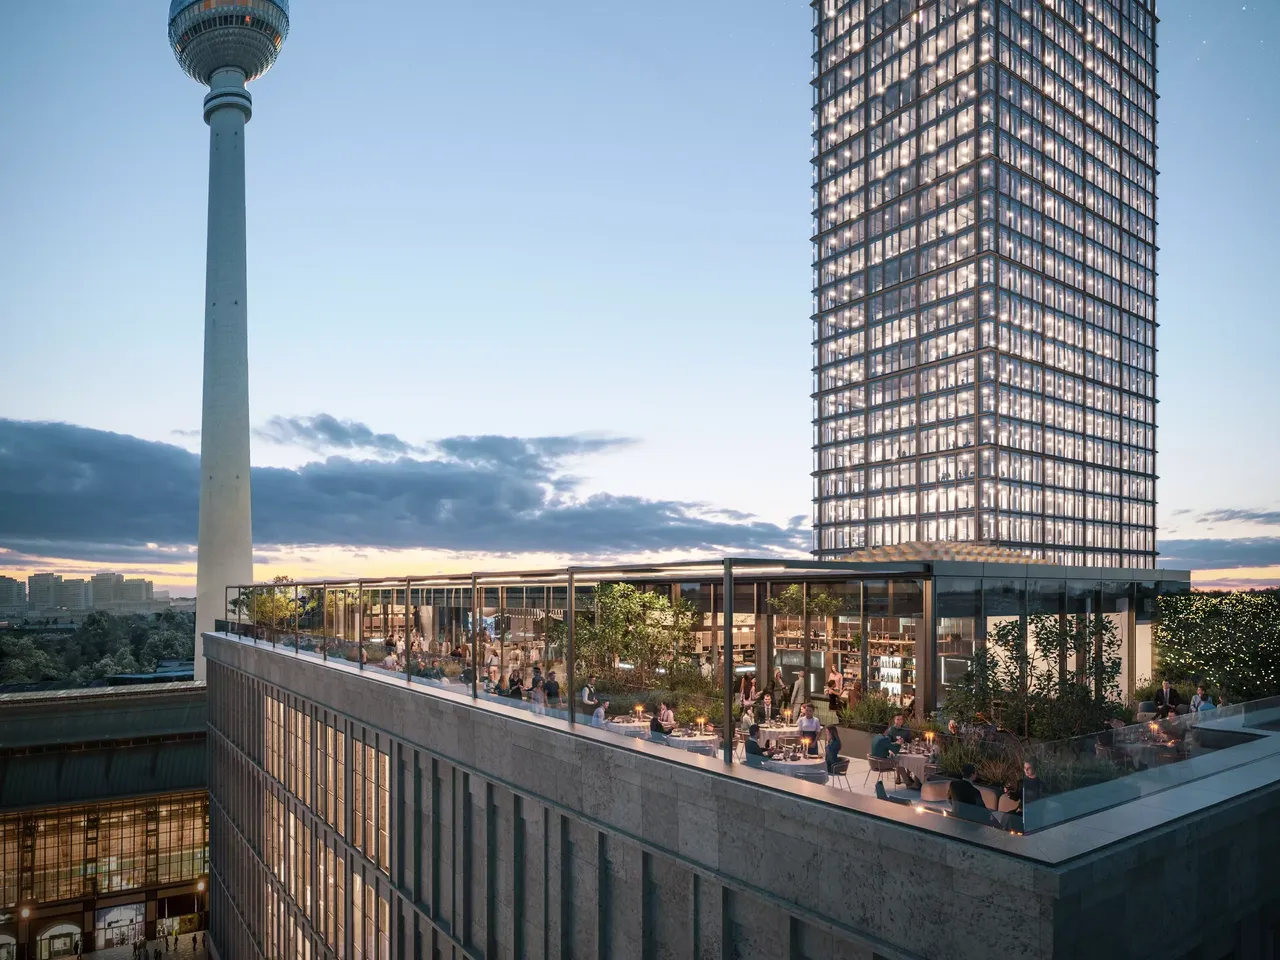 Es wird die Dachterasse der hausInvest Immobilie Mynd am Alexanderplatz in Berlin dargestellt.